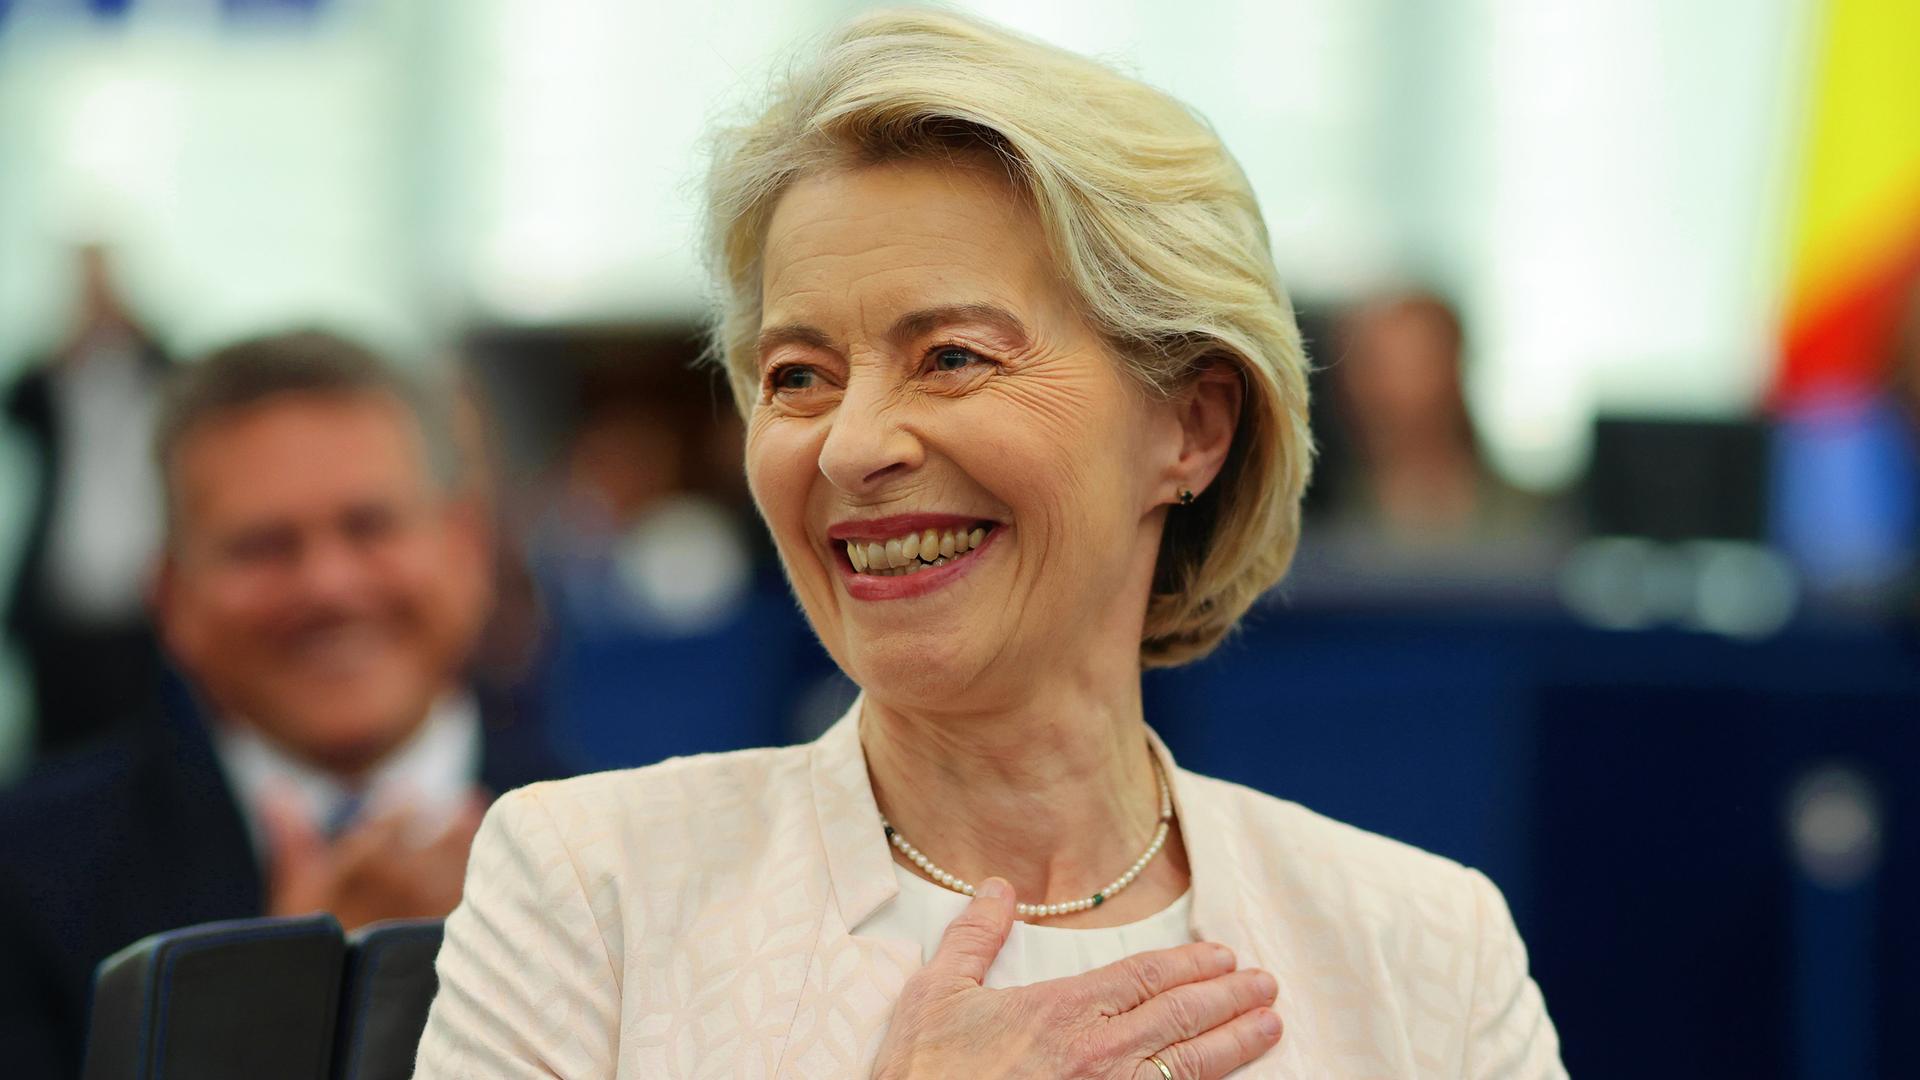 Straßburg: Ursula von der Leyen (CDU), amtierende Präsidentin der Europäischen Kommission, reagiert nach der Auszählung der Stimmen im Plenarsaal des Europäischen Parlaments. Sie hat die rechte Hand auf die Brust gelegt.